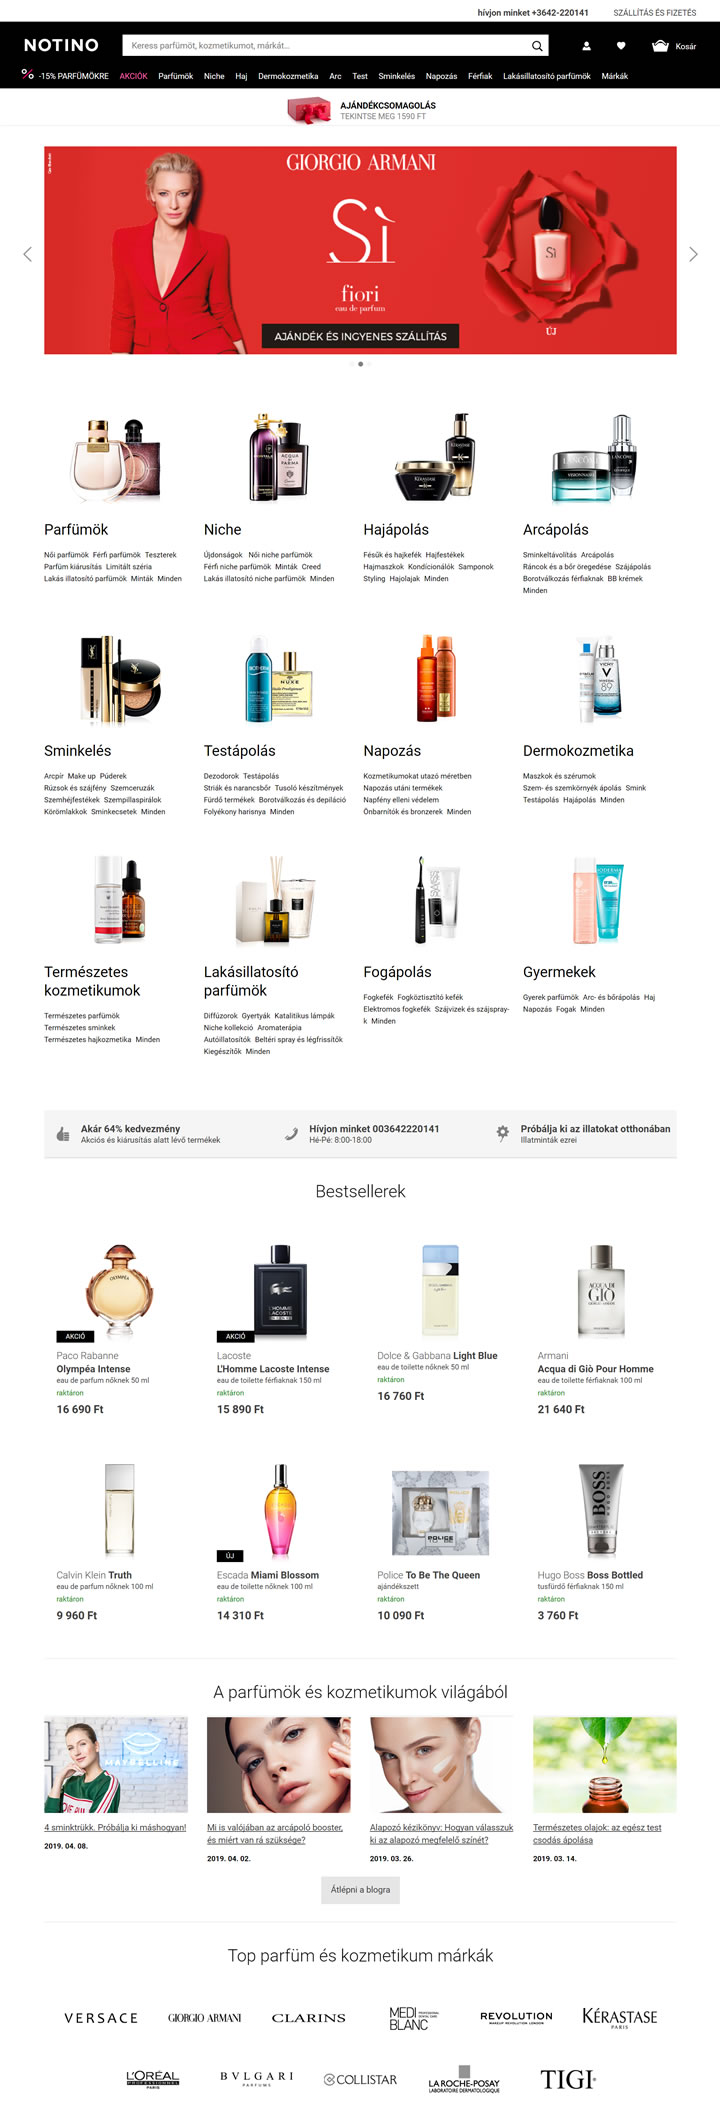 Notino匈牙利：購買香水和化妝品 匈牙利購物網站 MeetKK-MeetKK